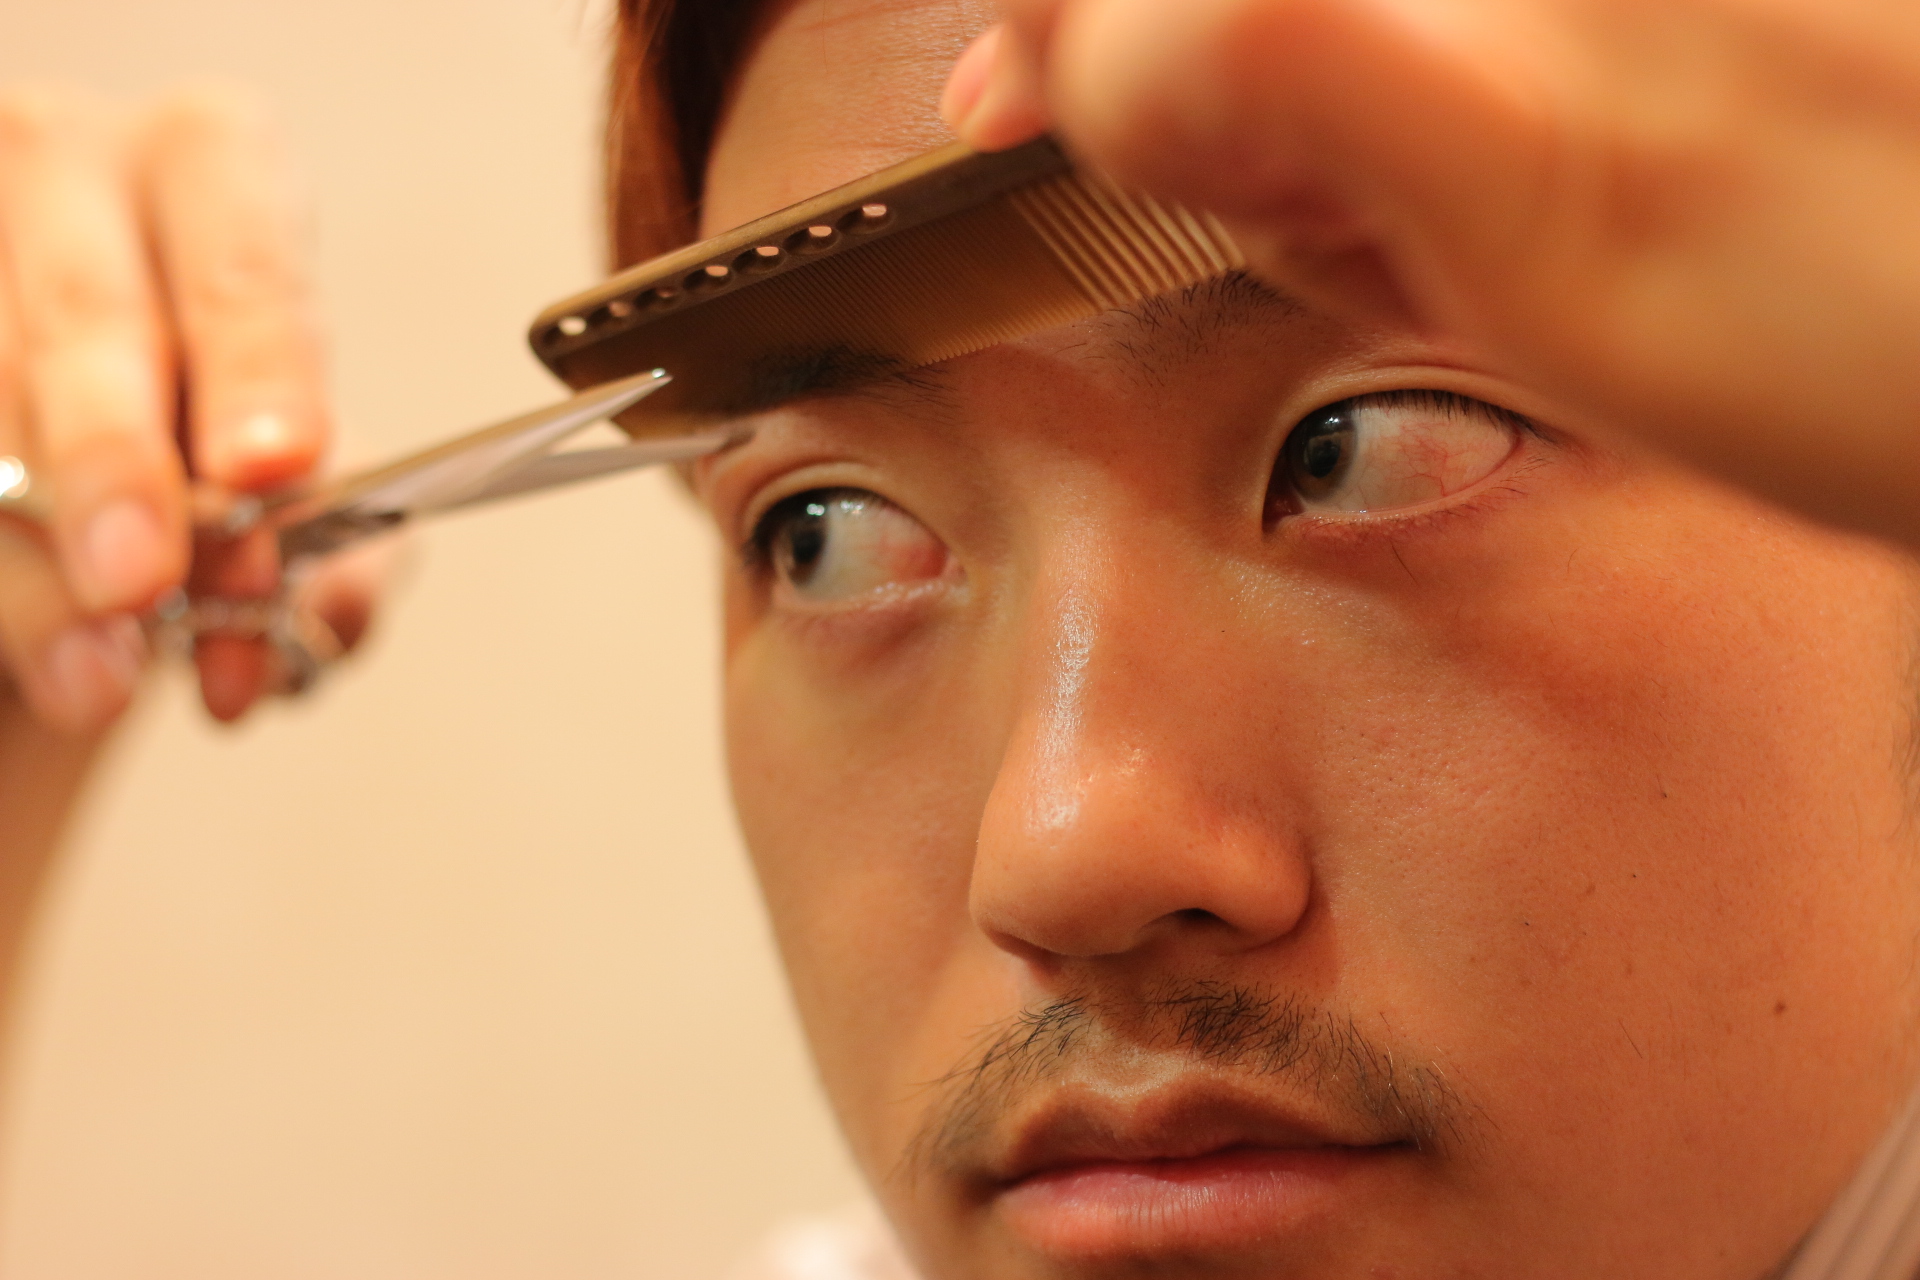 男生常見六款眉型 過往恐怖眉毛比較😨幫自己或男友找到適合眉型 - 美妝板 | Dcard